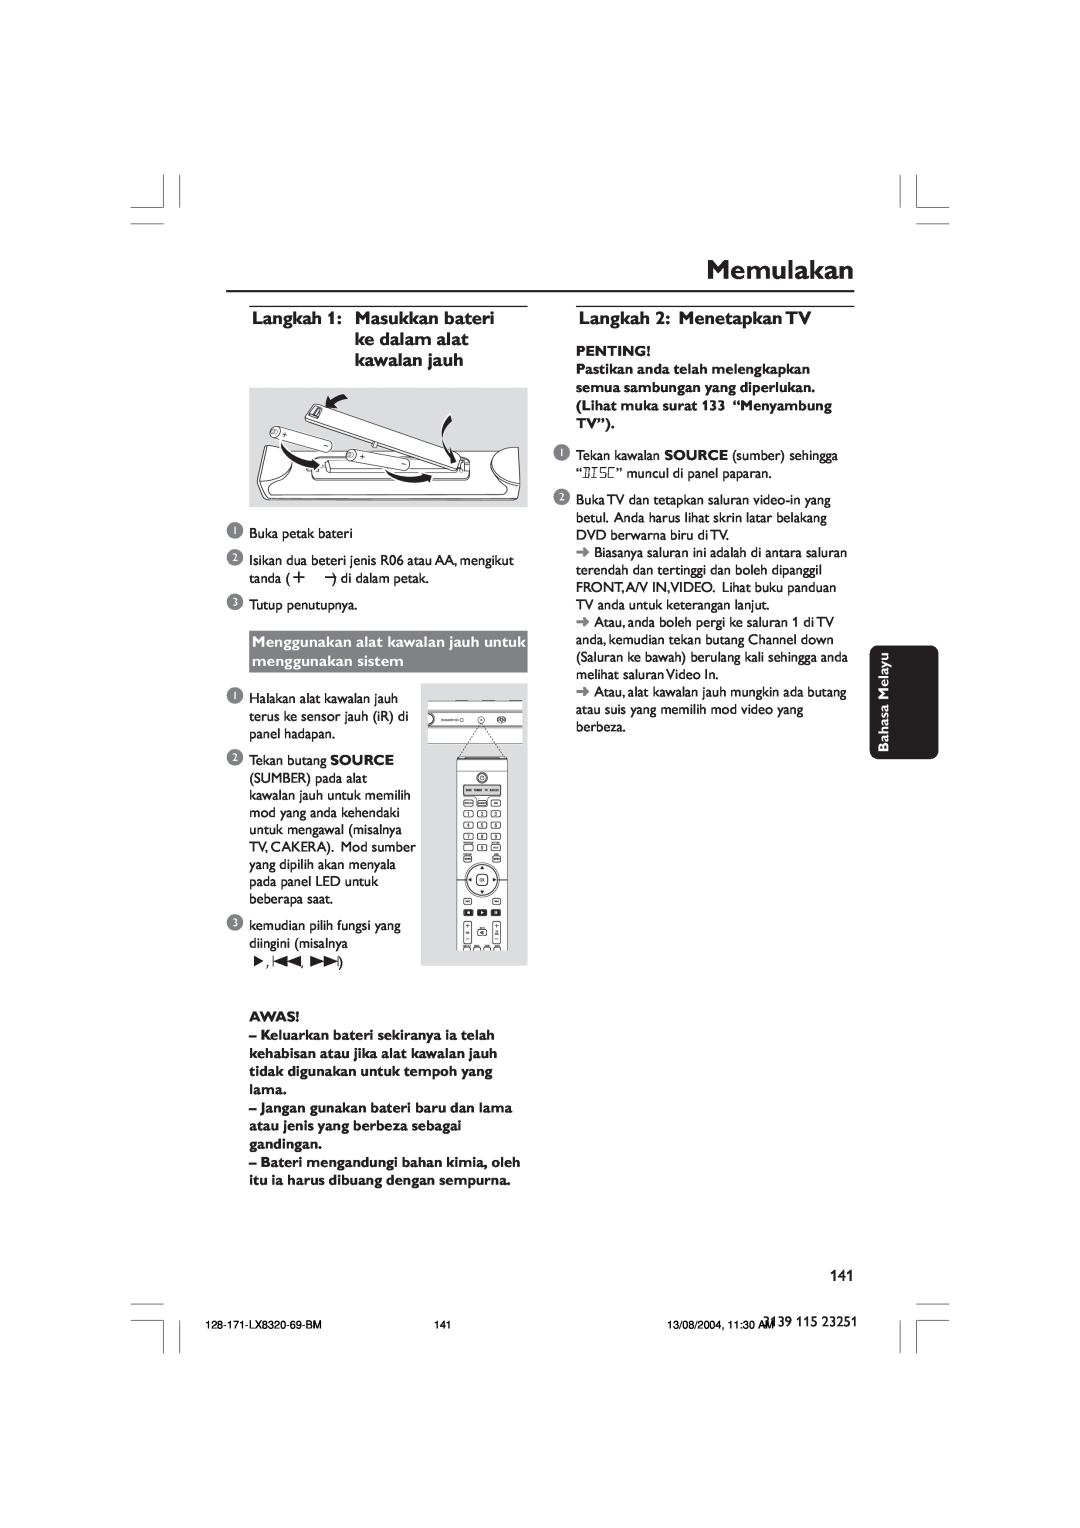 Philips LX8320SA user manual Memulakan, Langkah 2 Menetapkan TV, Awas, Penting, Bahasa Melayu 